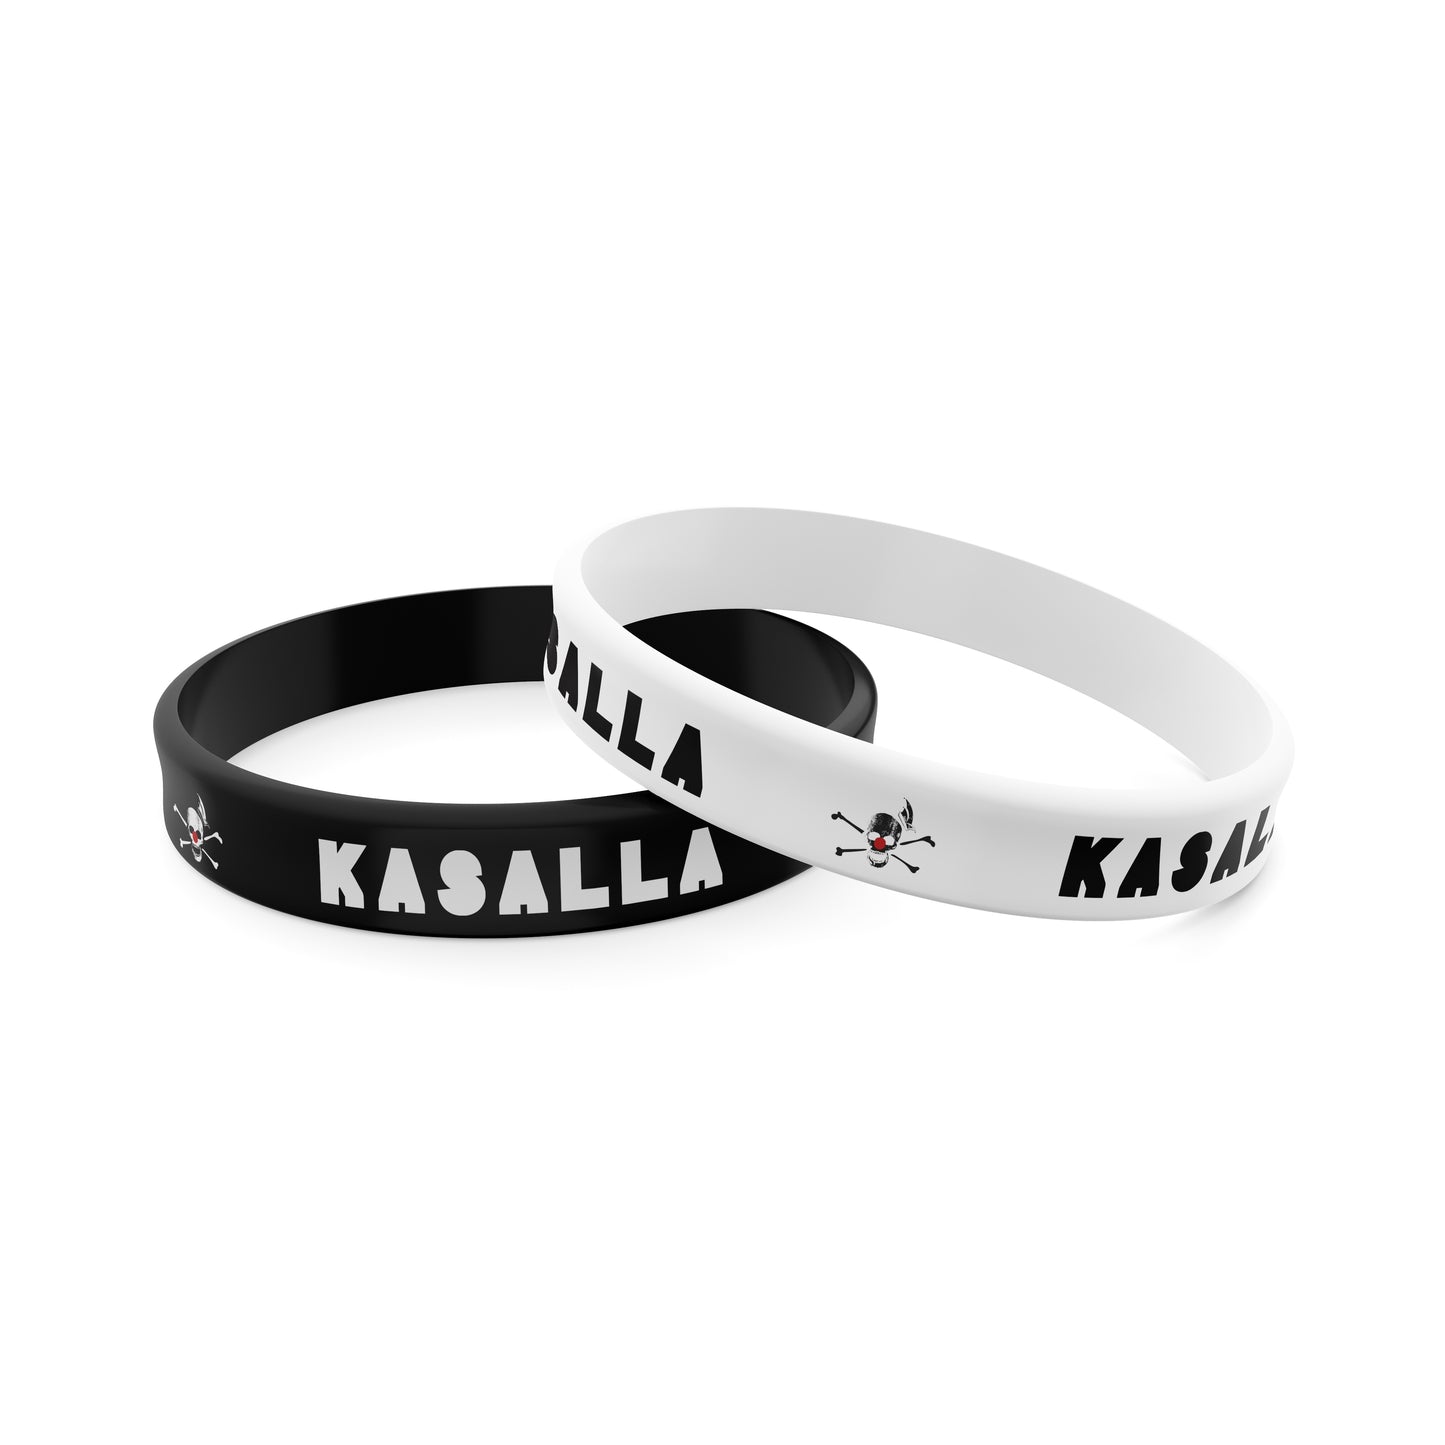 "Kasalla" Armband